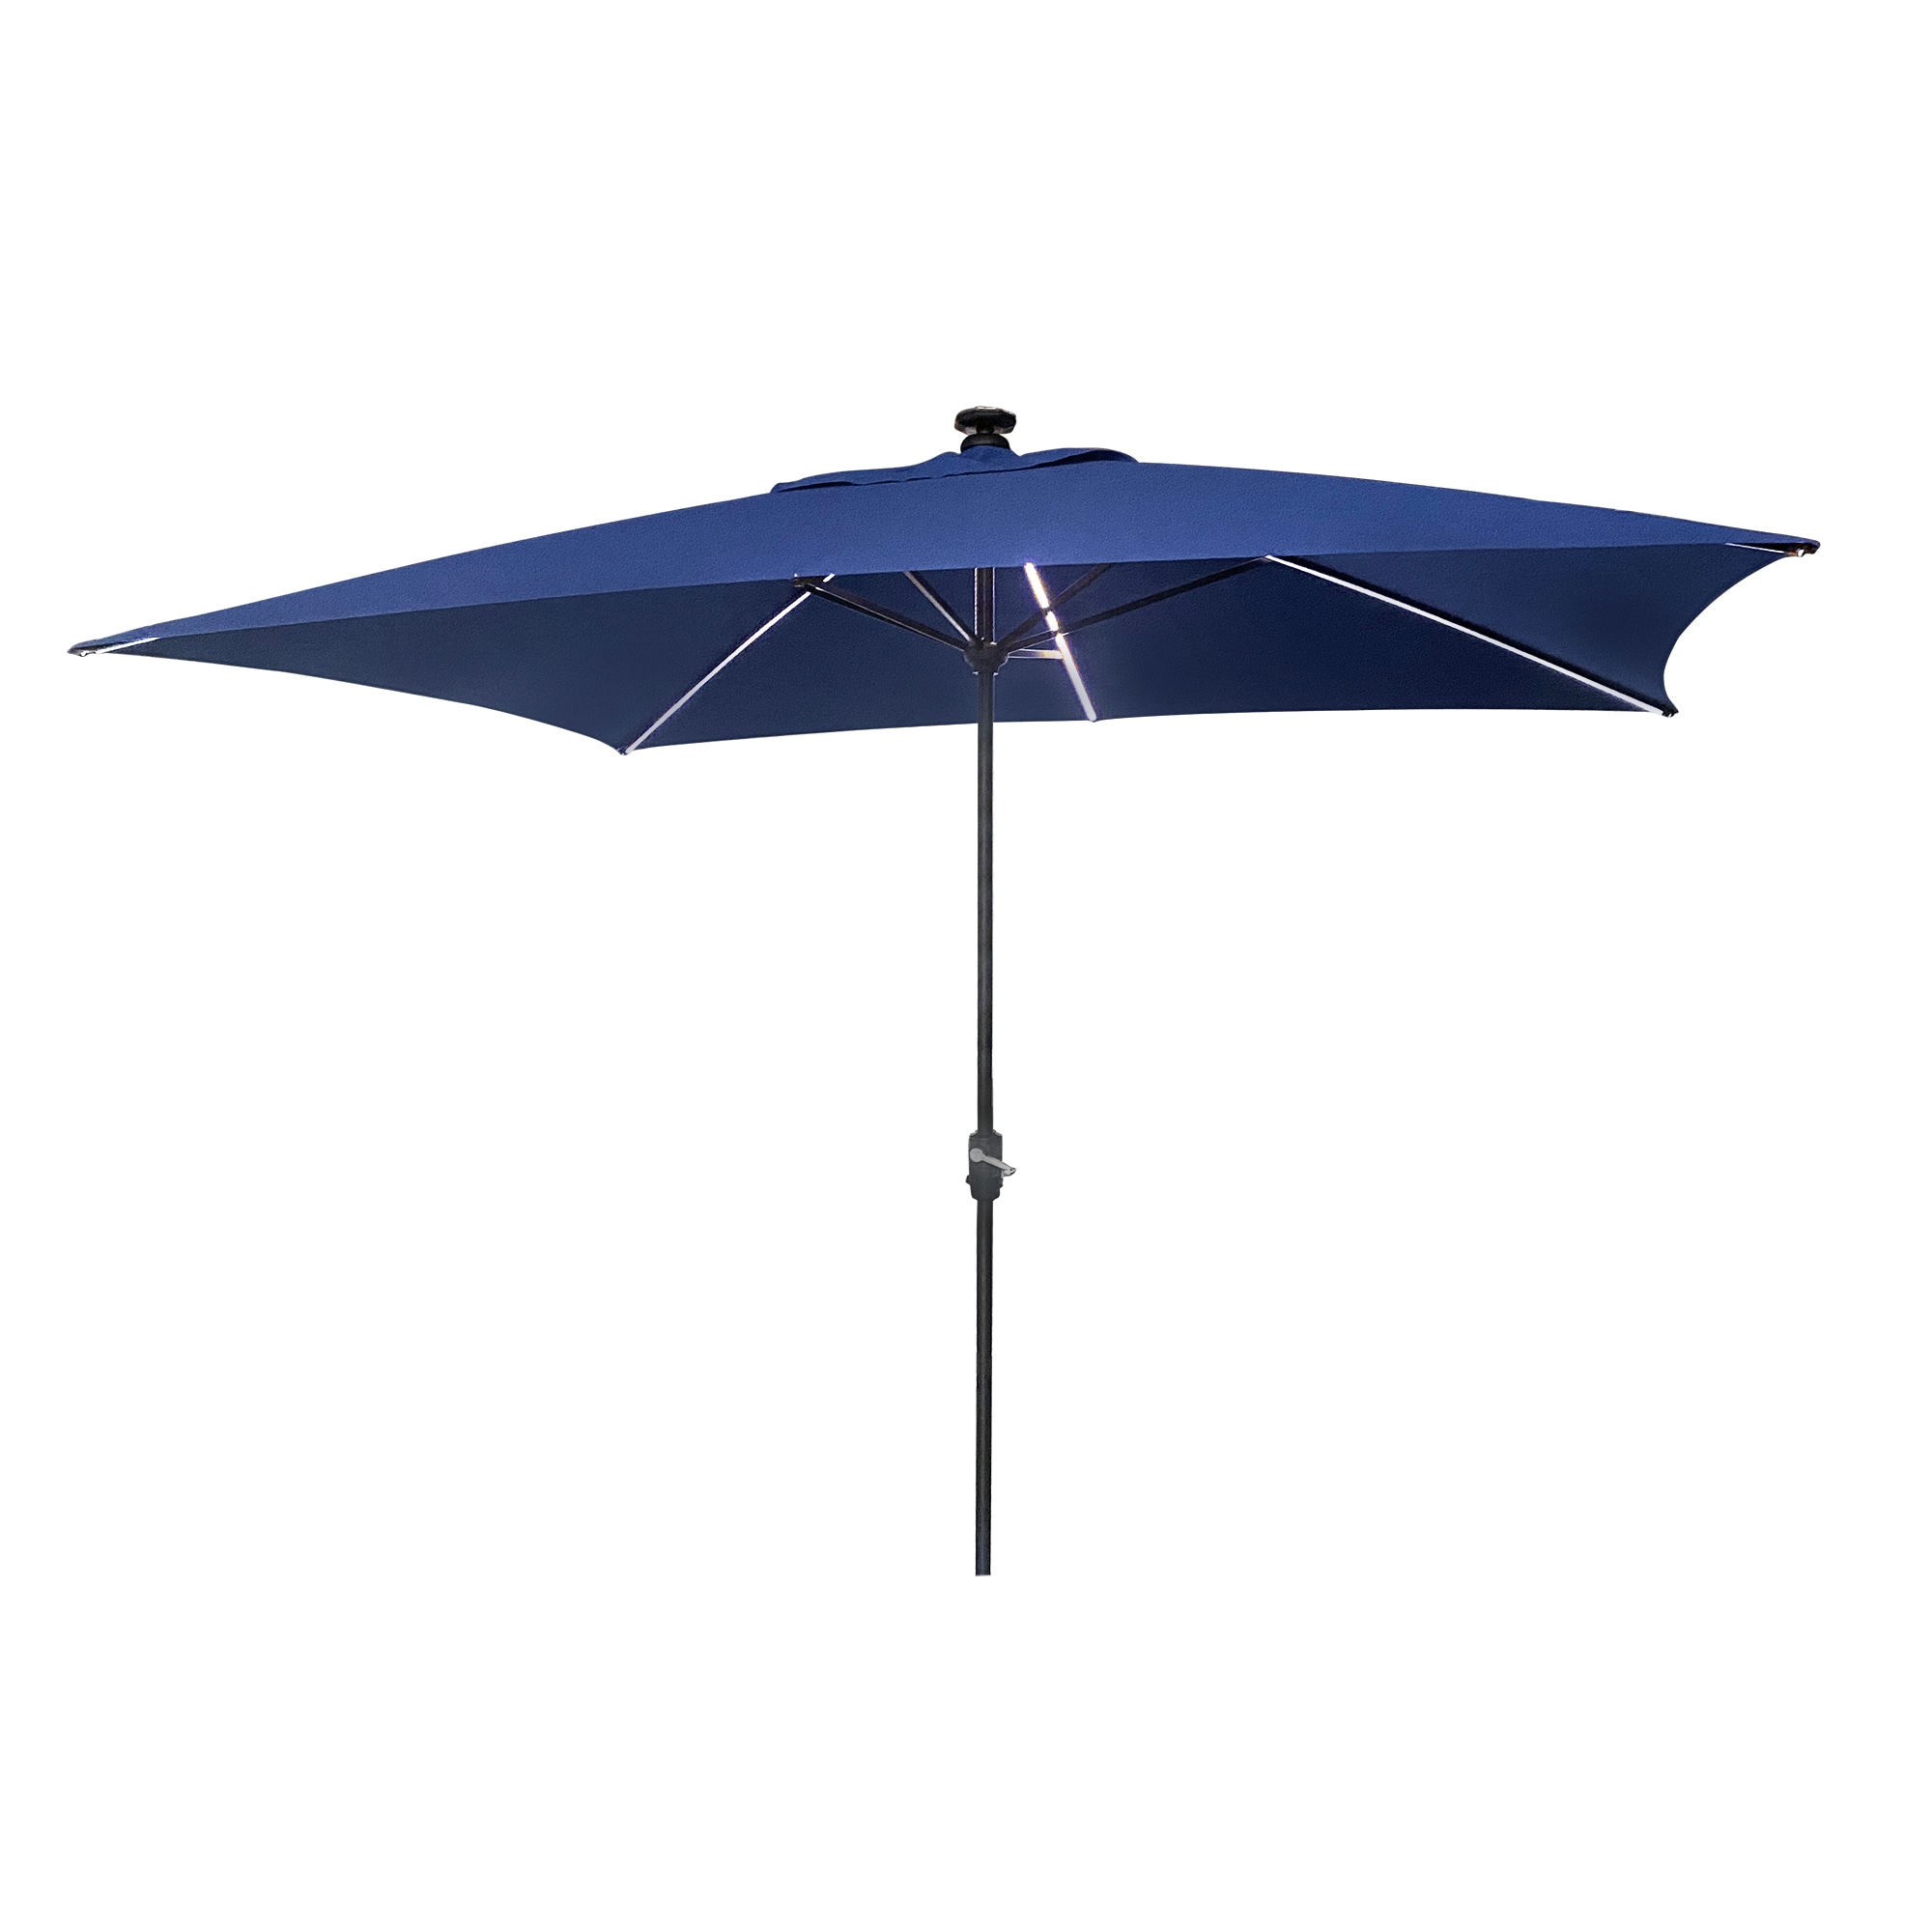 Rectangular Patio Umbrellas at Lowes.com